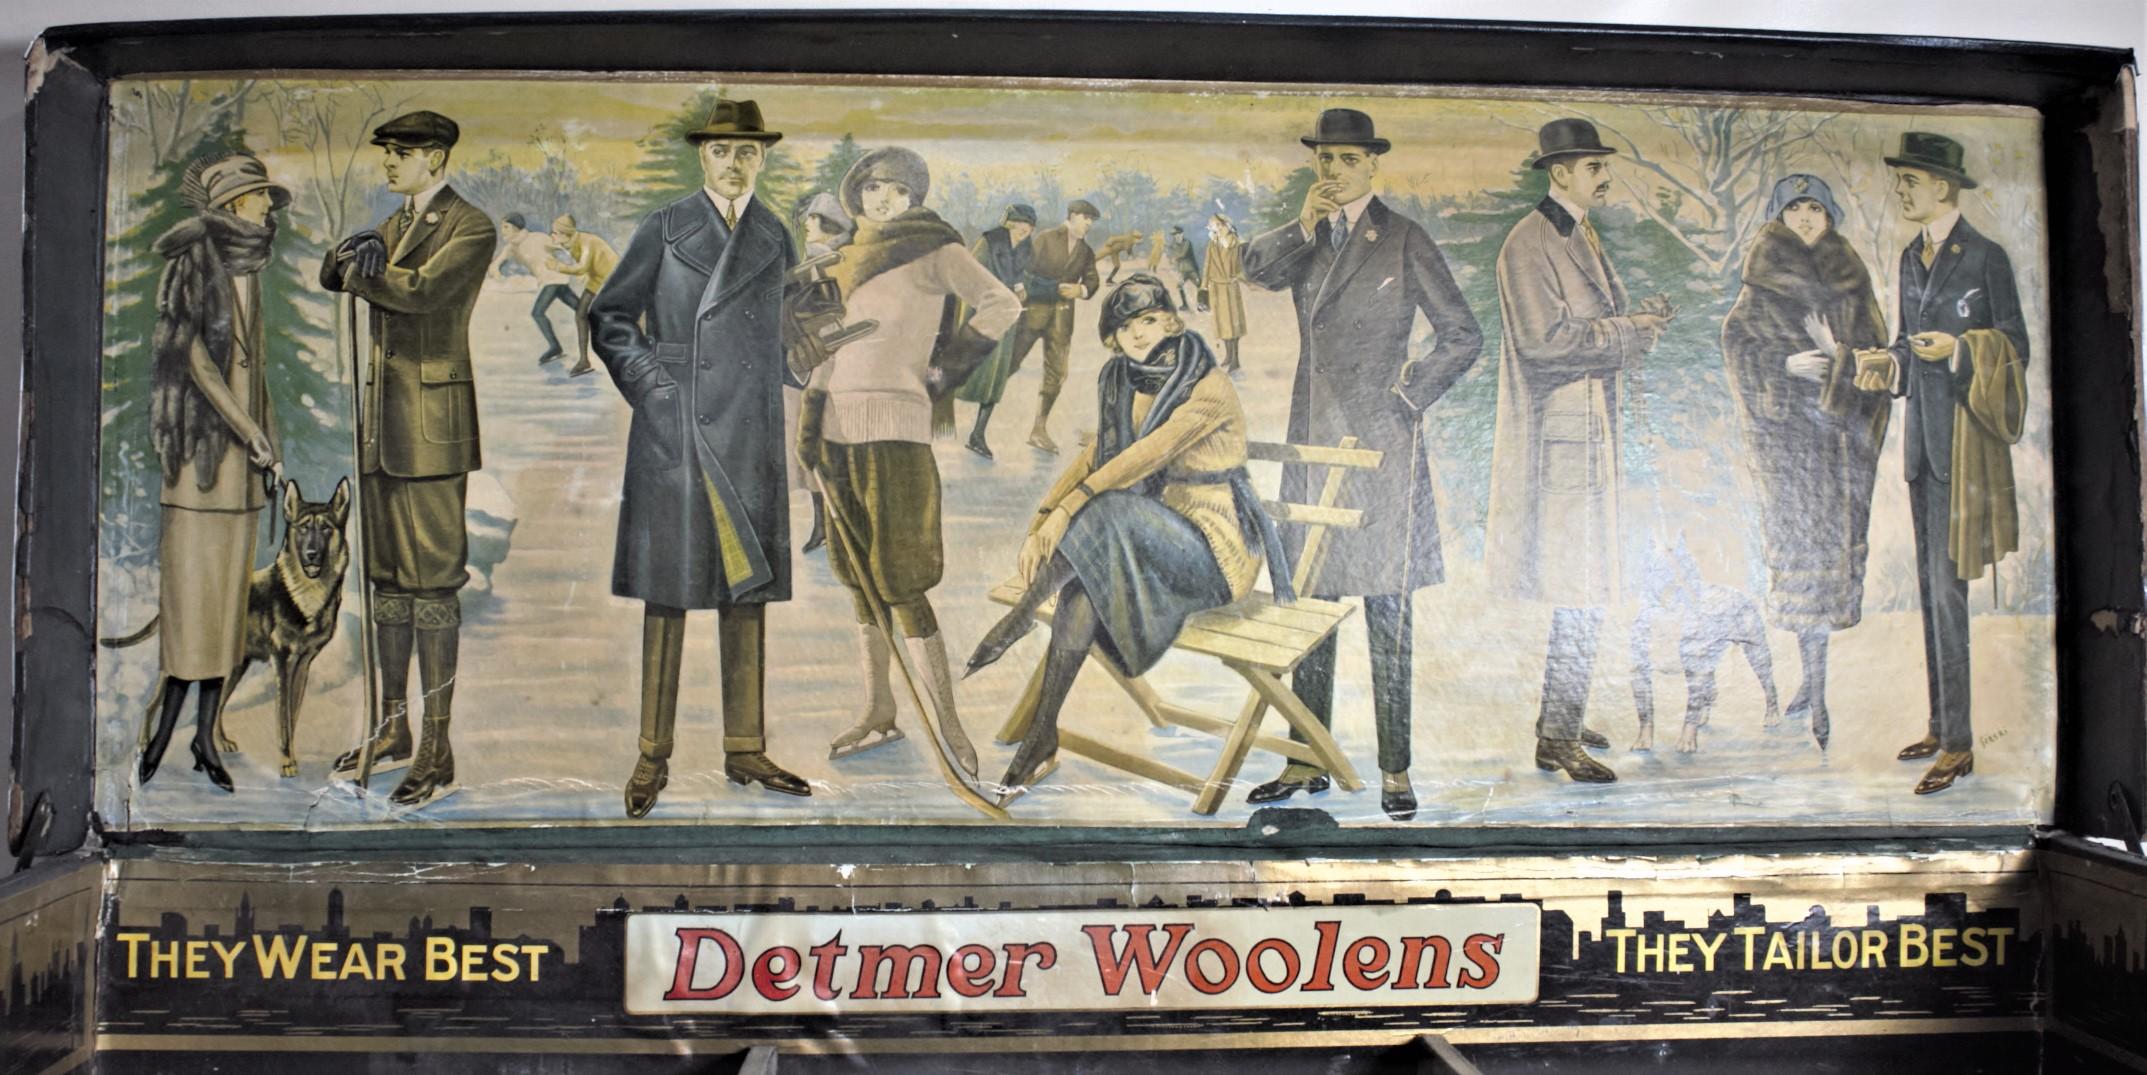 Diese Werbedisplaybox wurde um 1945 für die Detmer Woolens Company of the United States hergestellt. Diese Kiste wurde entweder an verschiedene Bekleidungsgeschäfte geschickt oder von deren Verkaufspersonal mitgenommen, um für ihre Wollprodukte zu